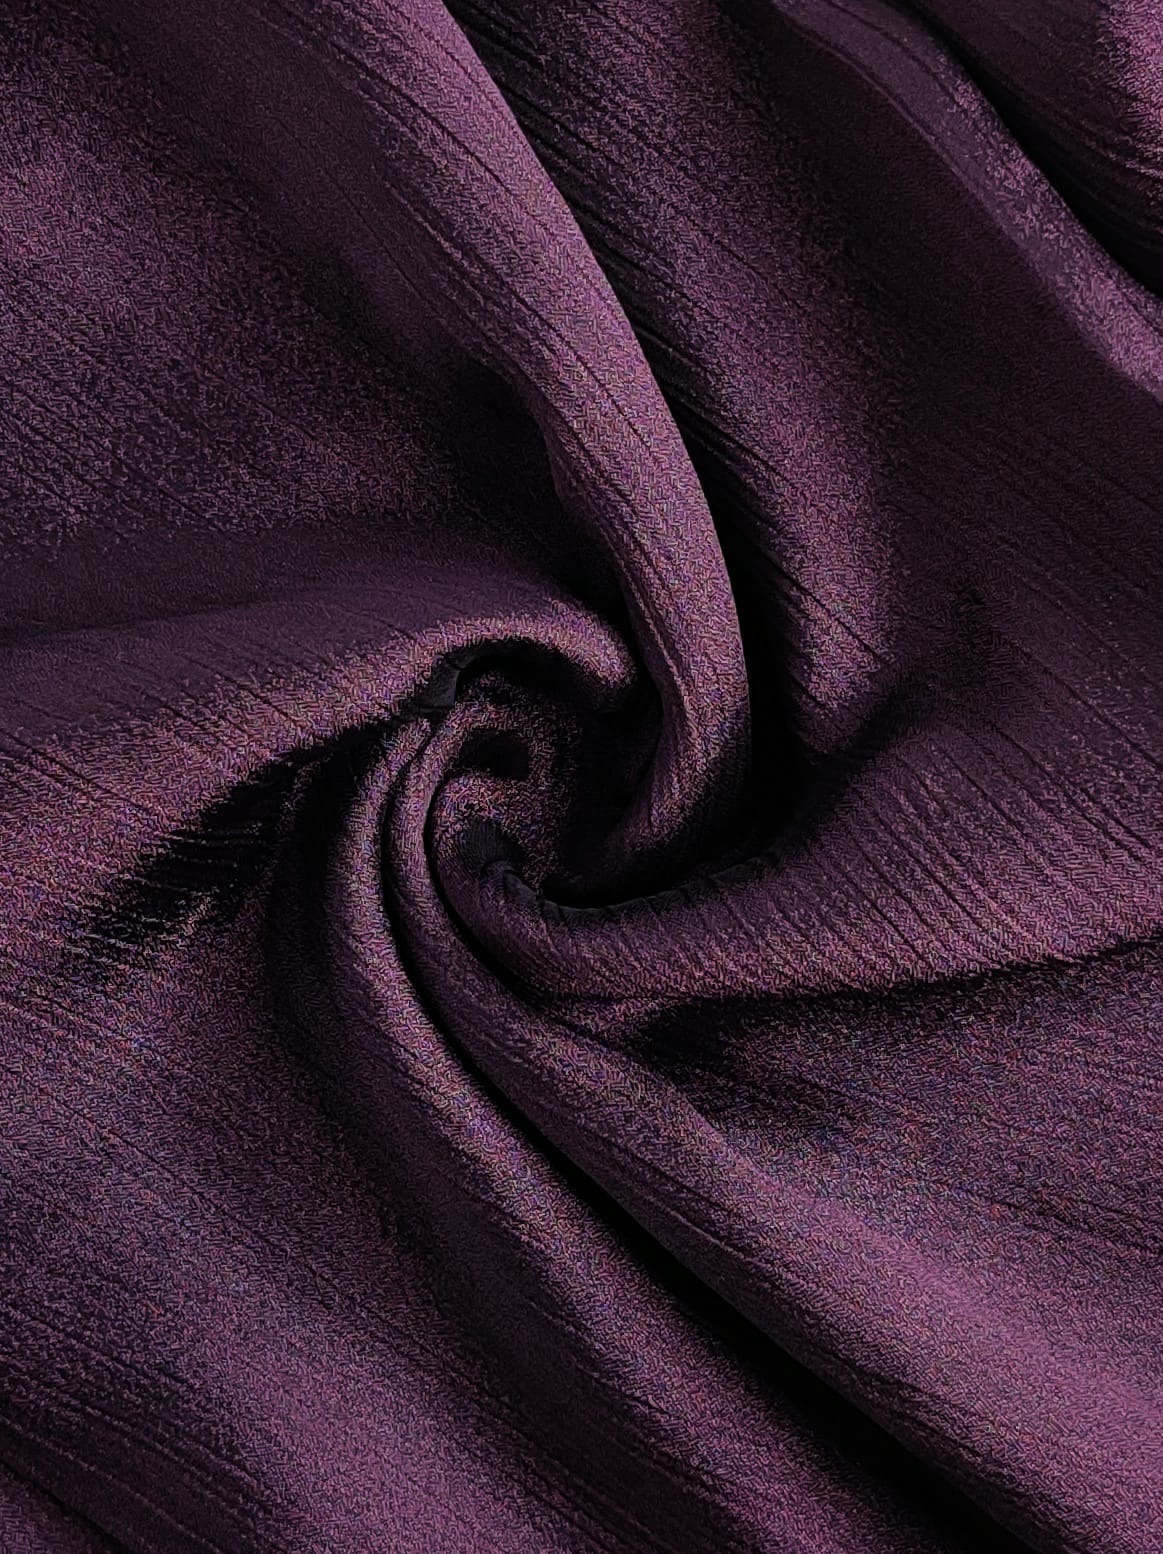 Sheen Crinkle Silk - Purple